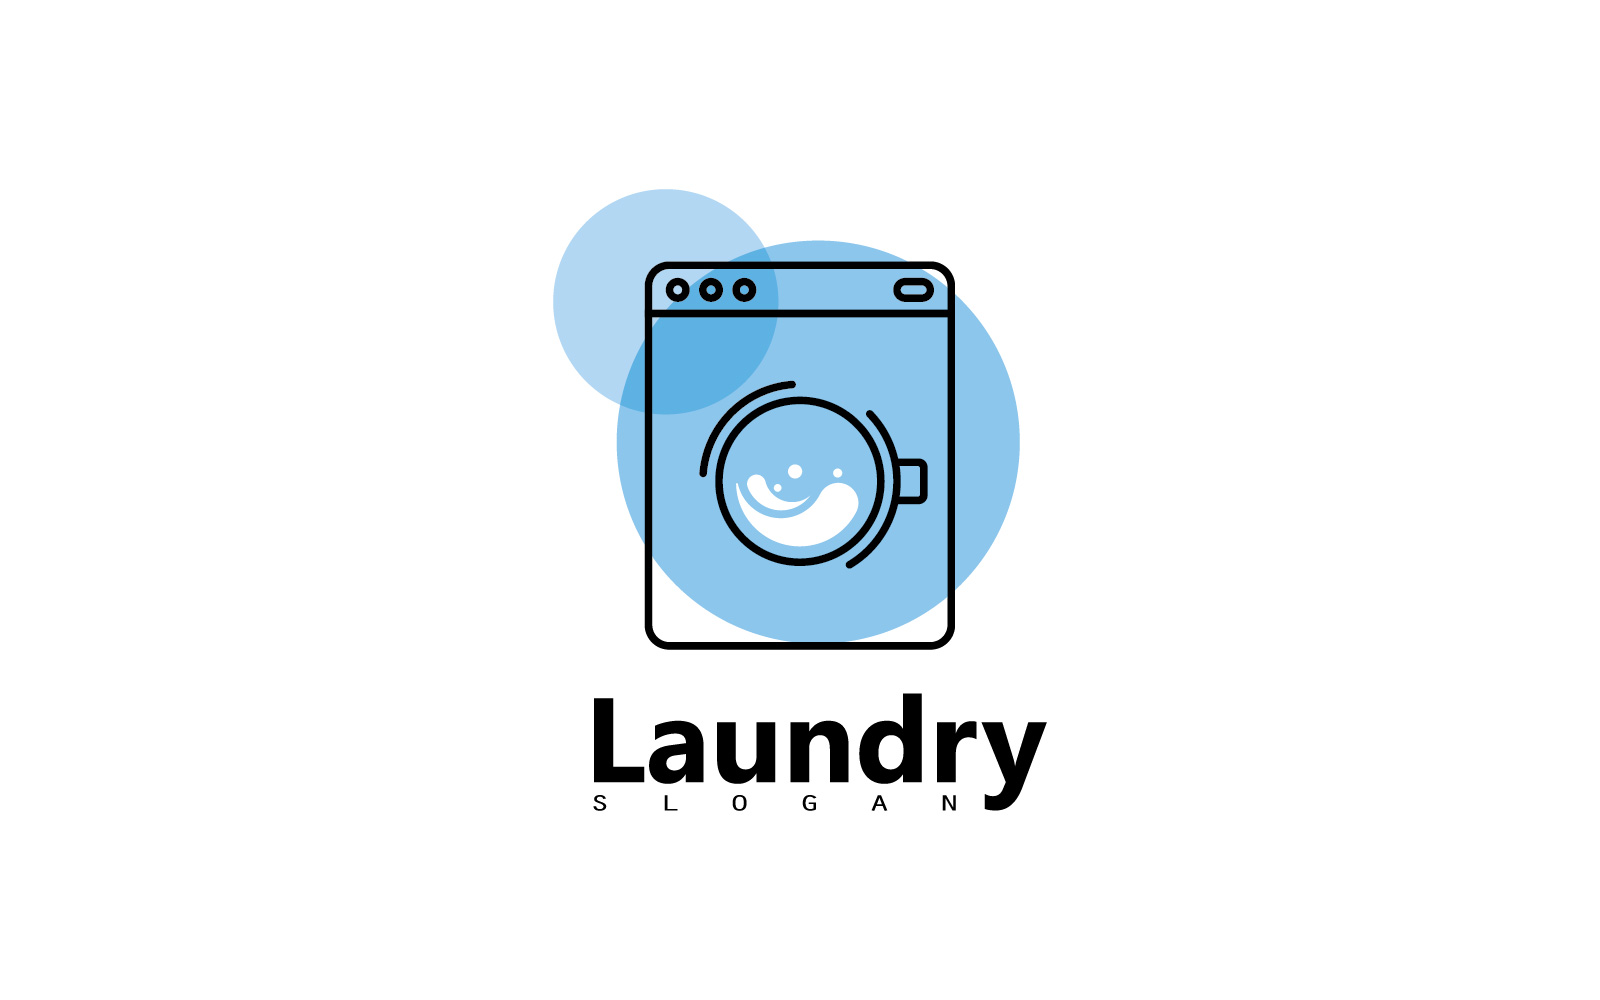 Washing machine laundry icon logo design V5